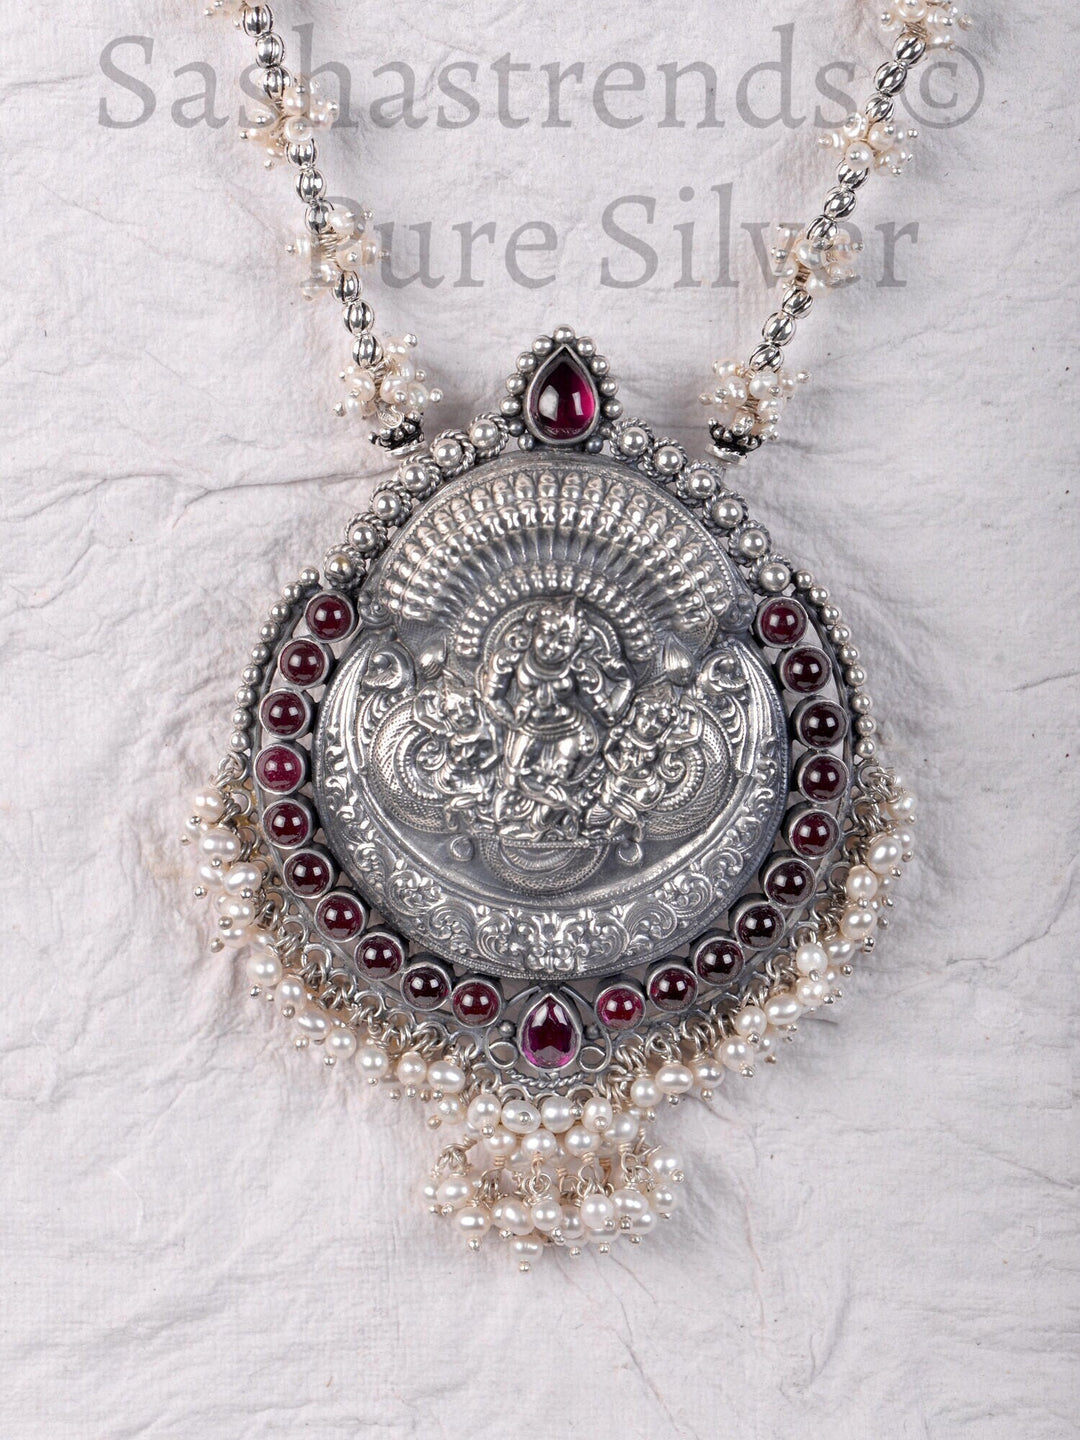 Hari Krishna pendant with chain